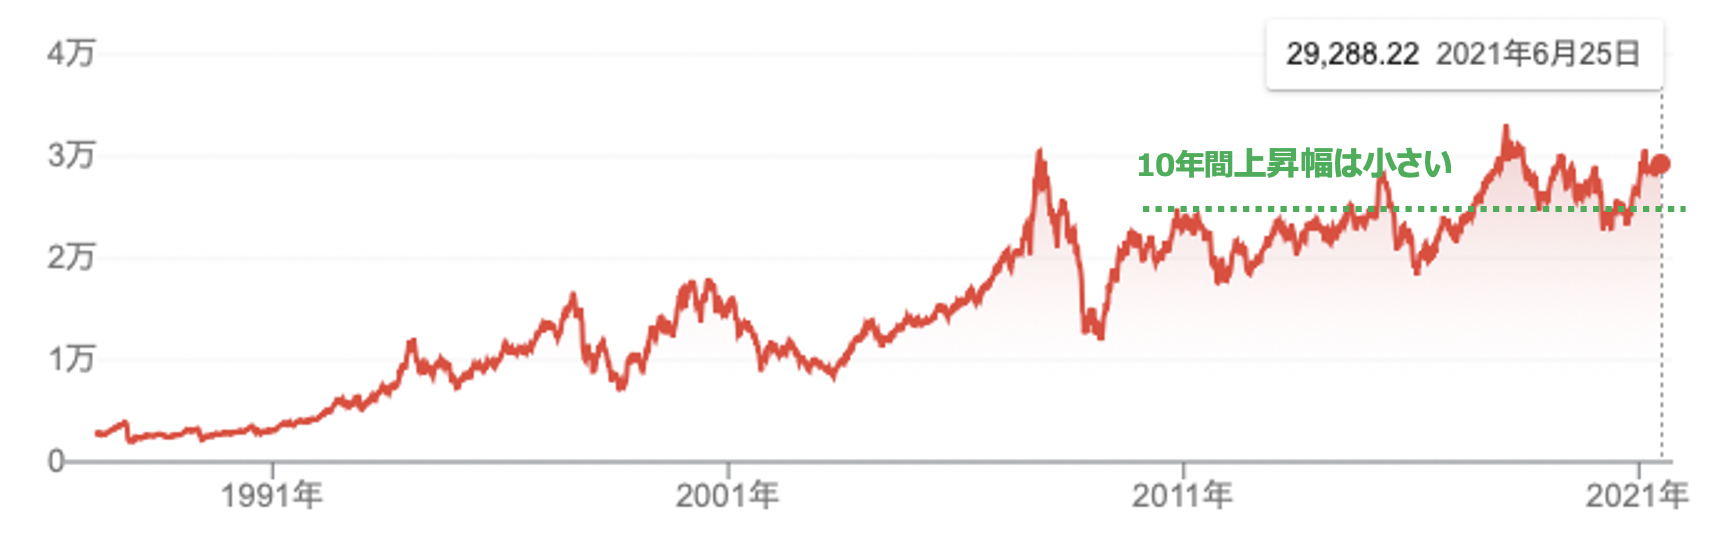 小米 株価